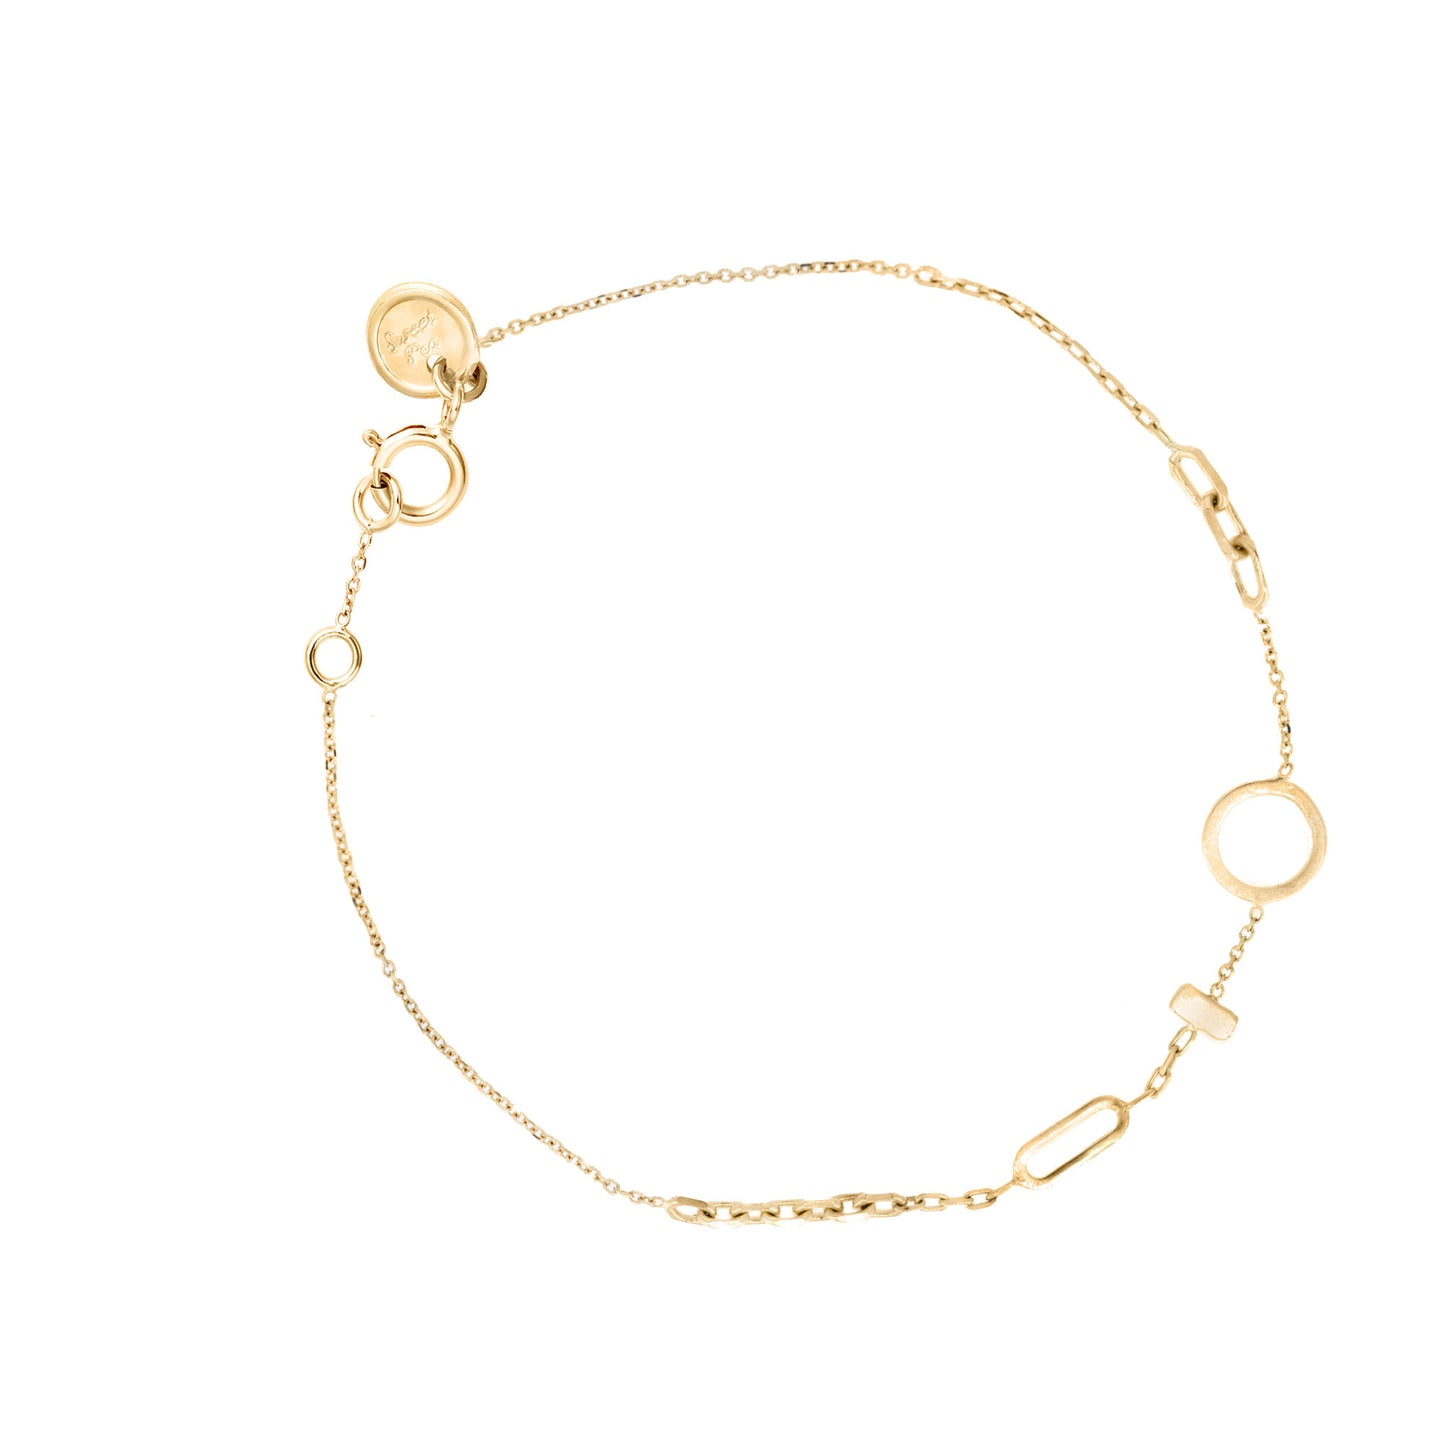 18ct Gold chains galore bracelet